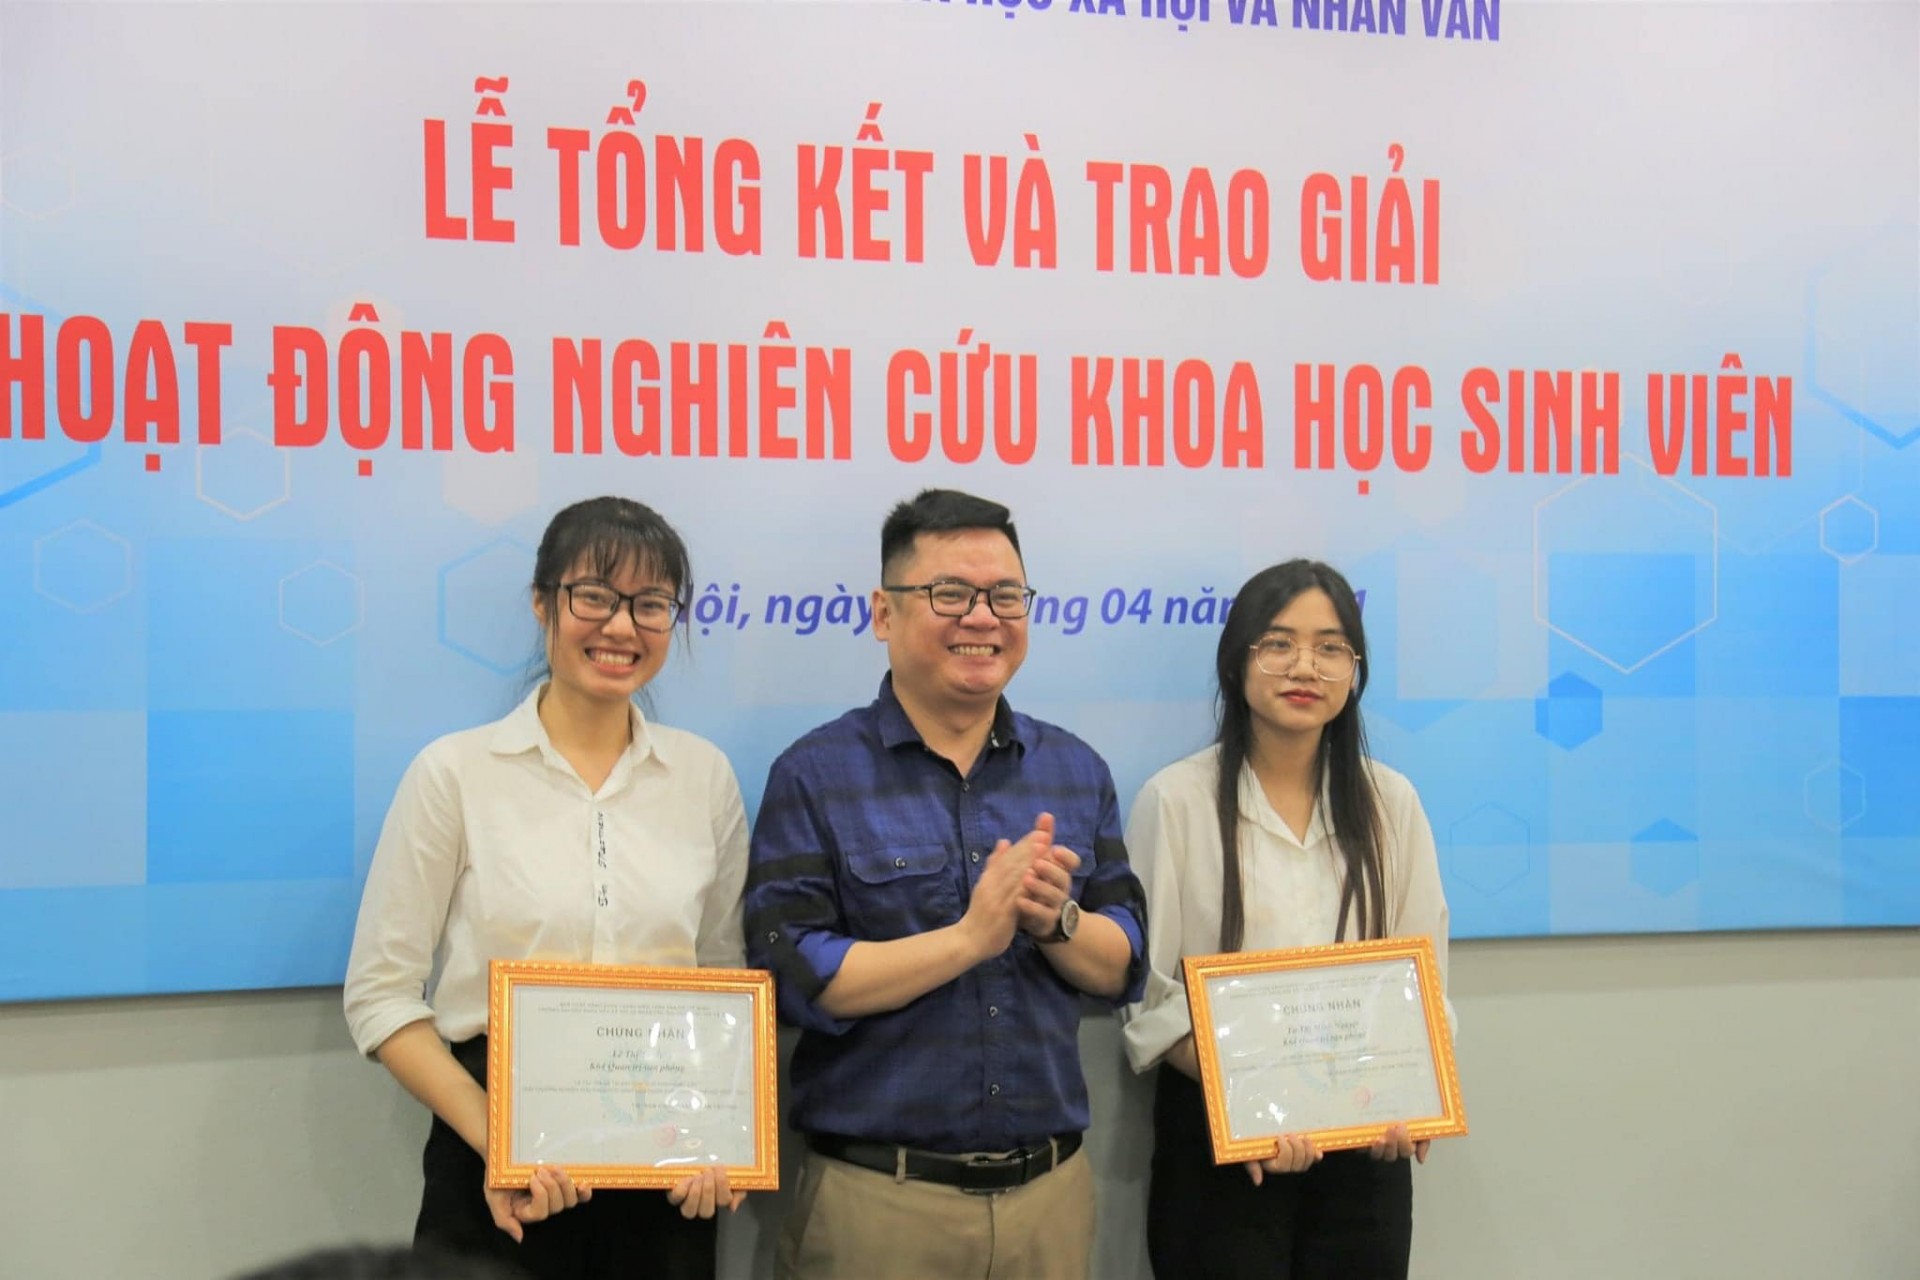 Từ Minh Nguyệt (phải) và Lê Thị Tuyết (trái) nhận giải thưởng cho giải pháp xuất sắc